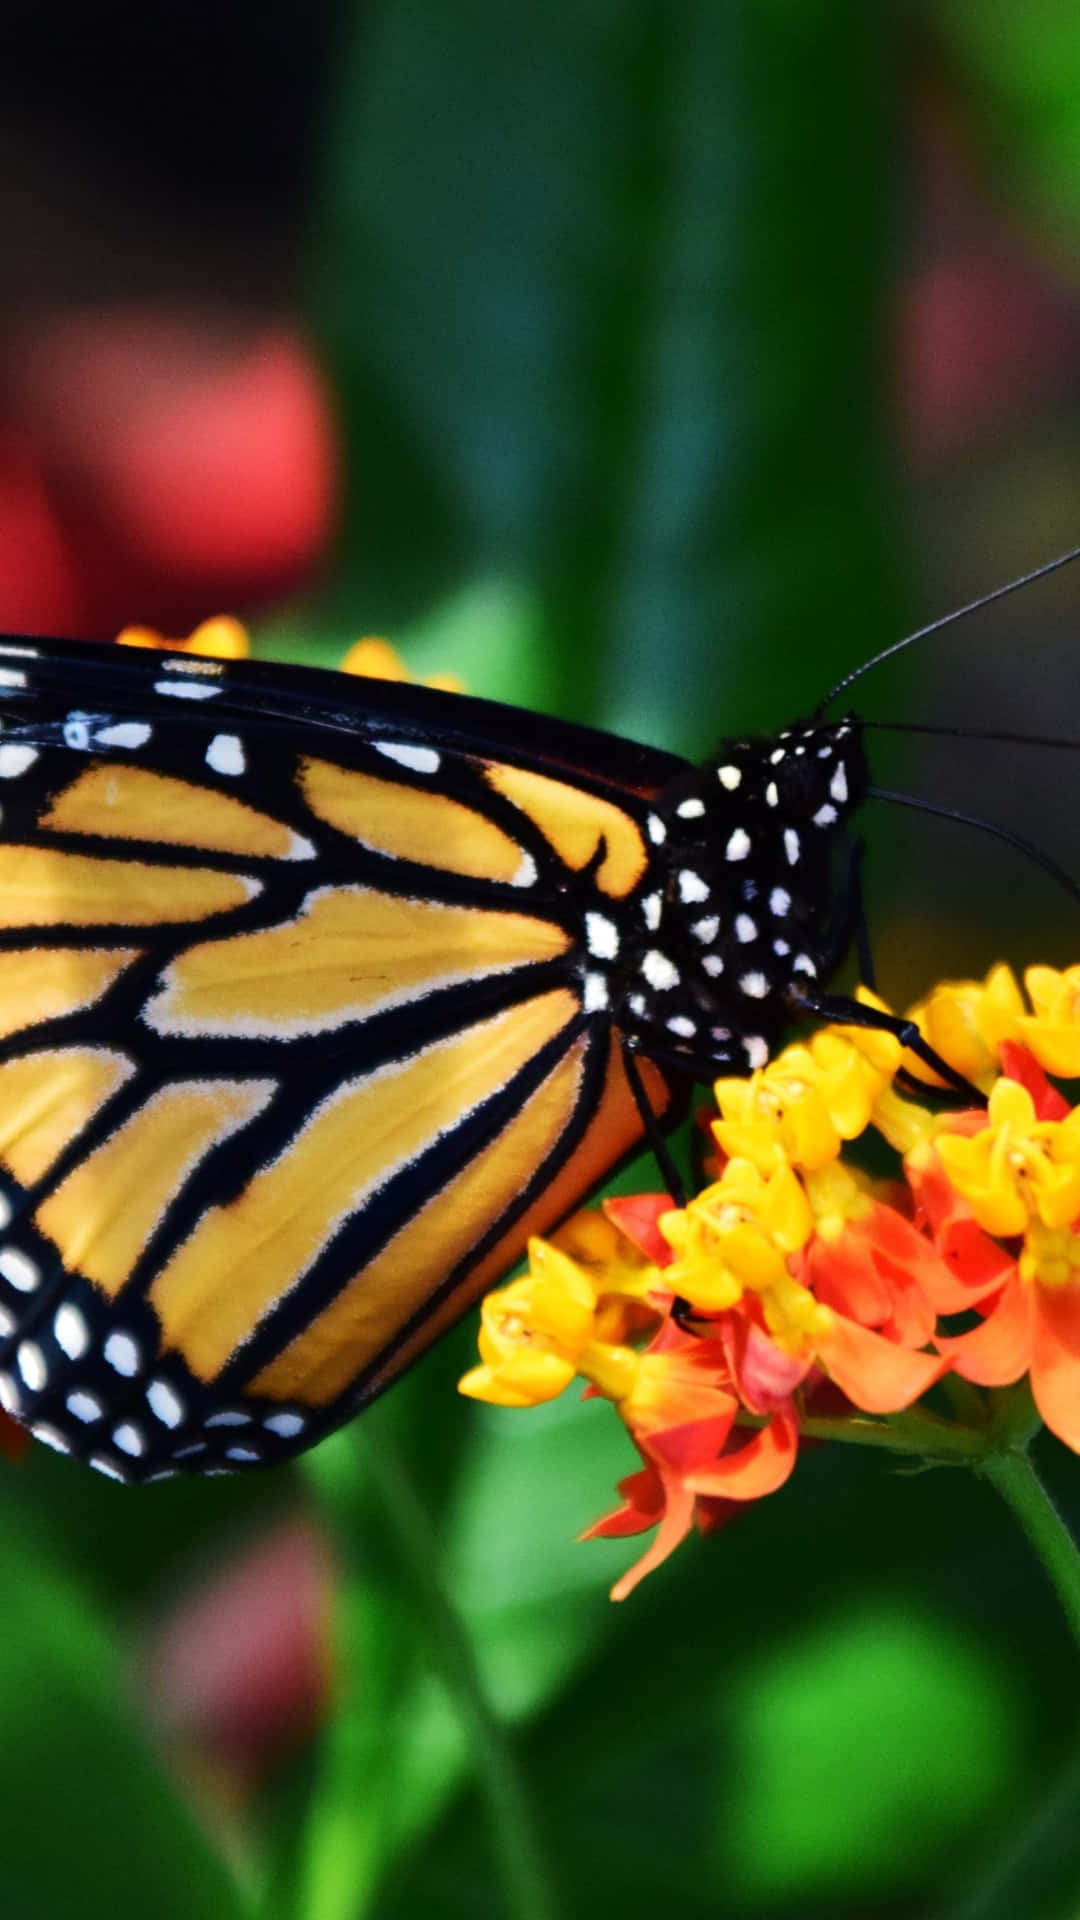 Einwunderschöner Schmetterling Ruht In Einer Lebendigen Blumigen Umgebung.